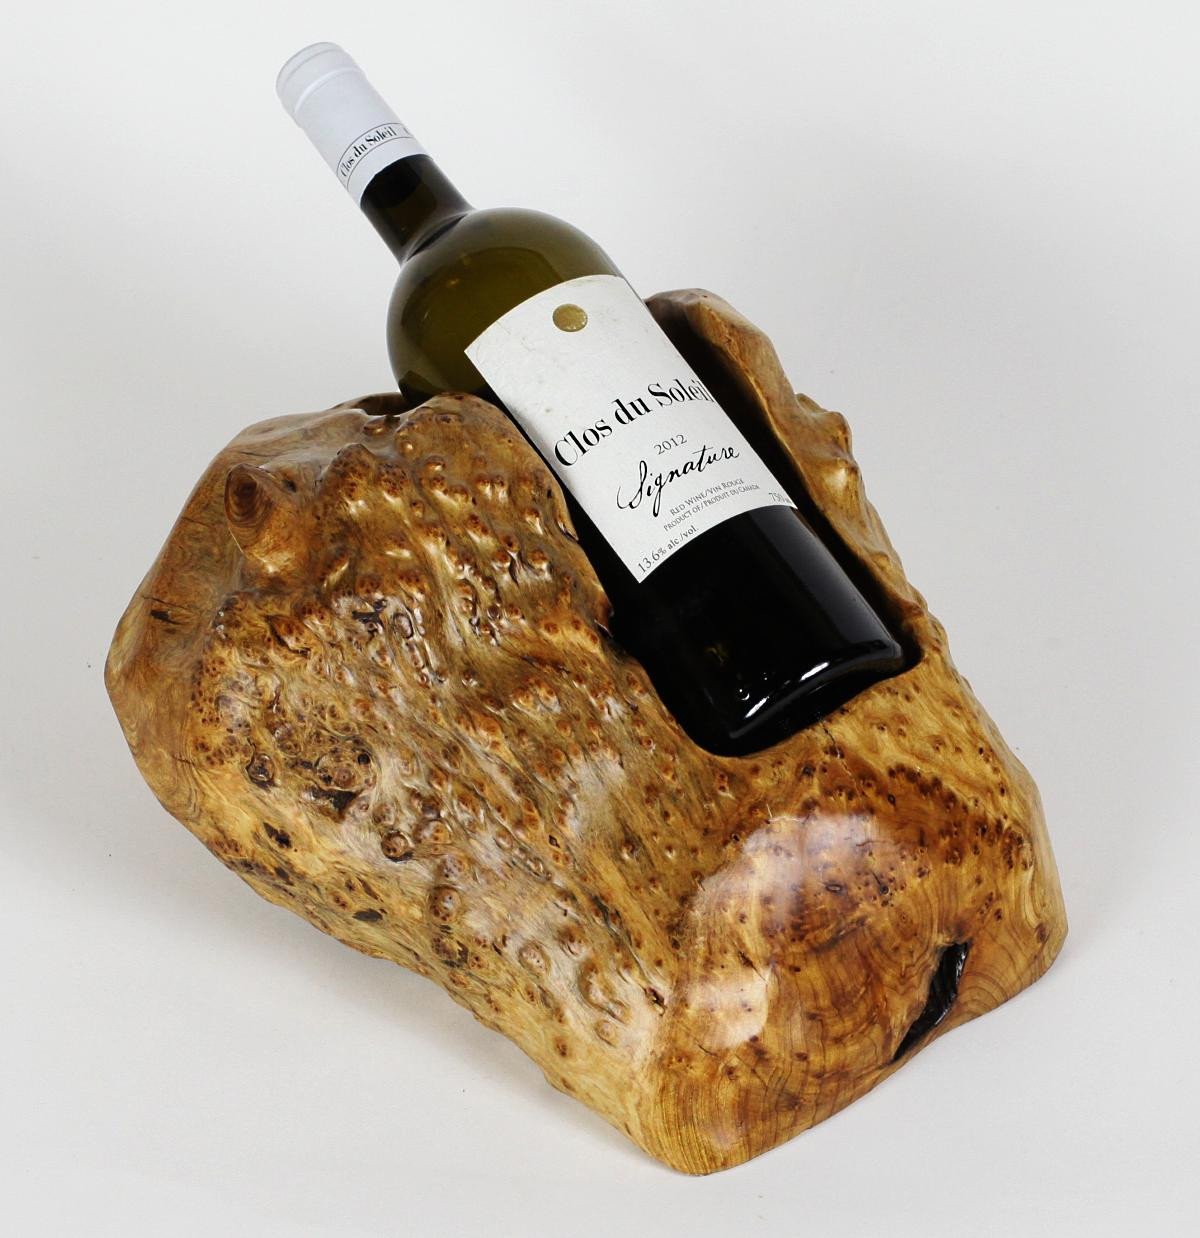 Driftwood Wine Bottle Holder